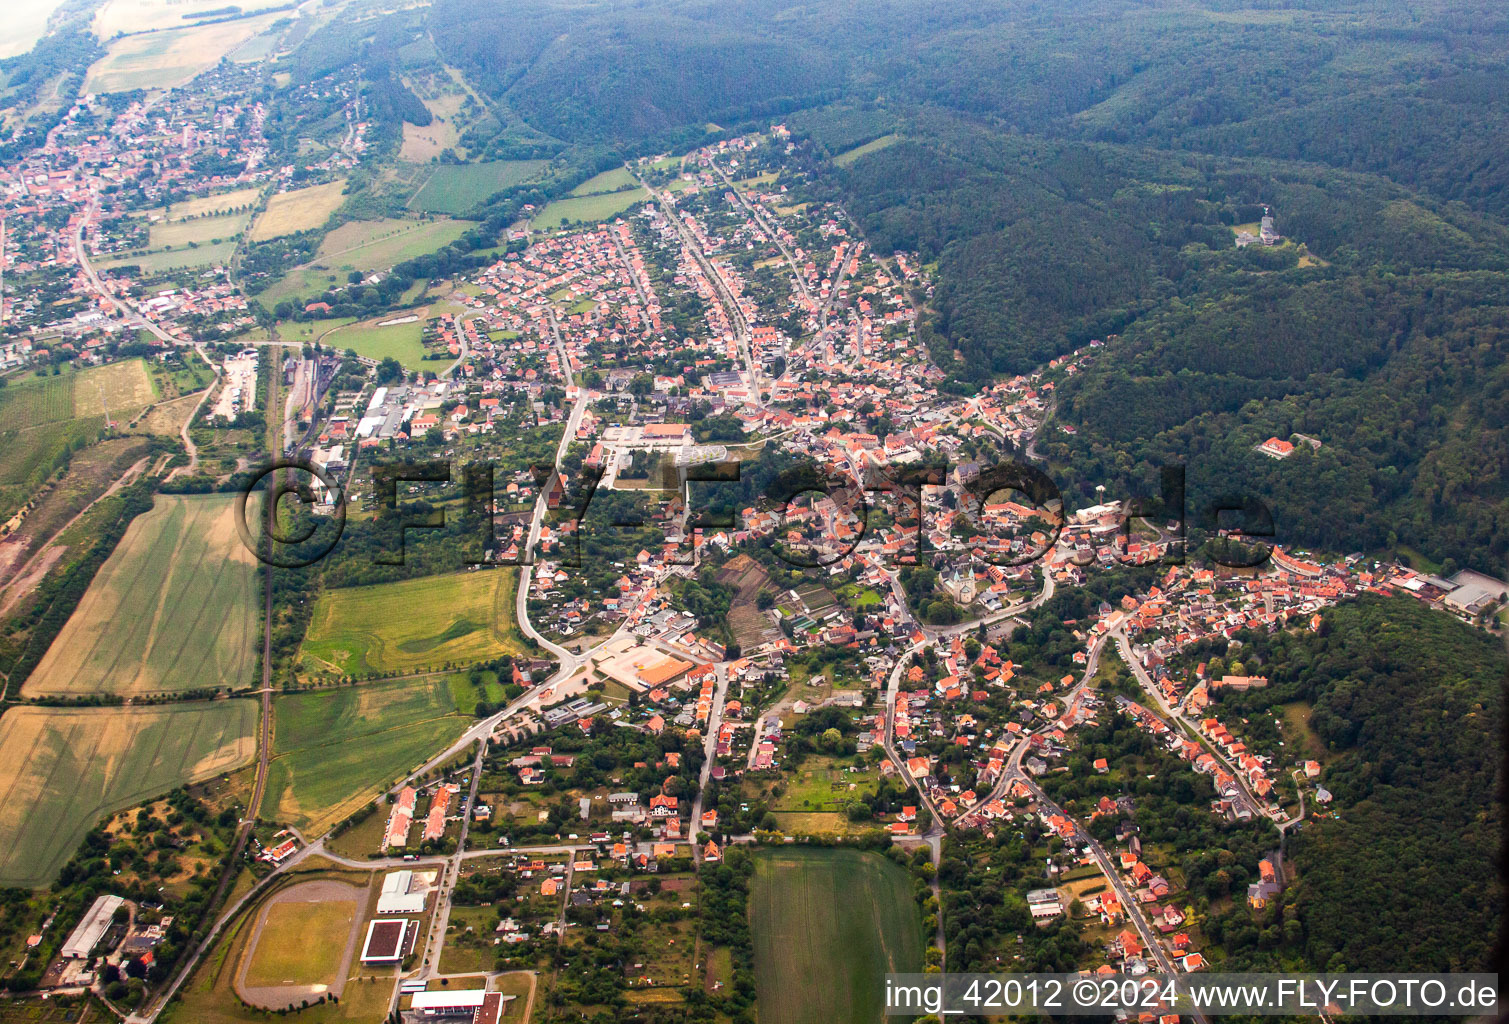 Vue aérienne de Quartier Bad Suderode in Quedlinburg dans le département Saxe-Anhalt, Allemagne